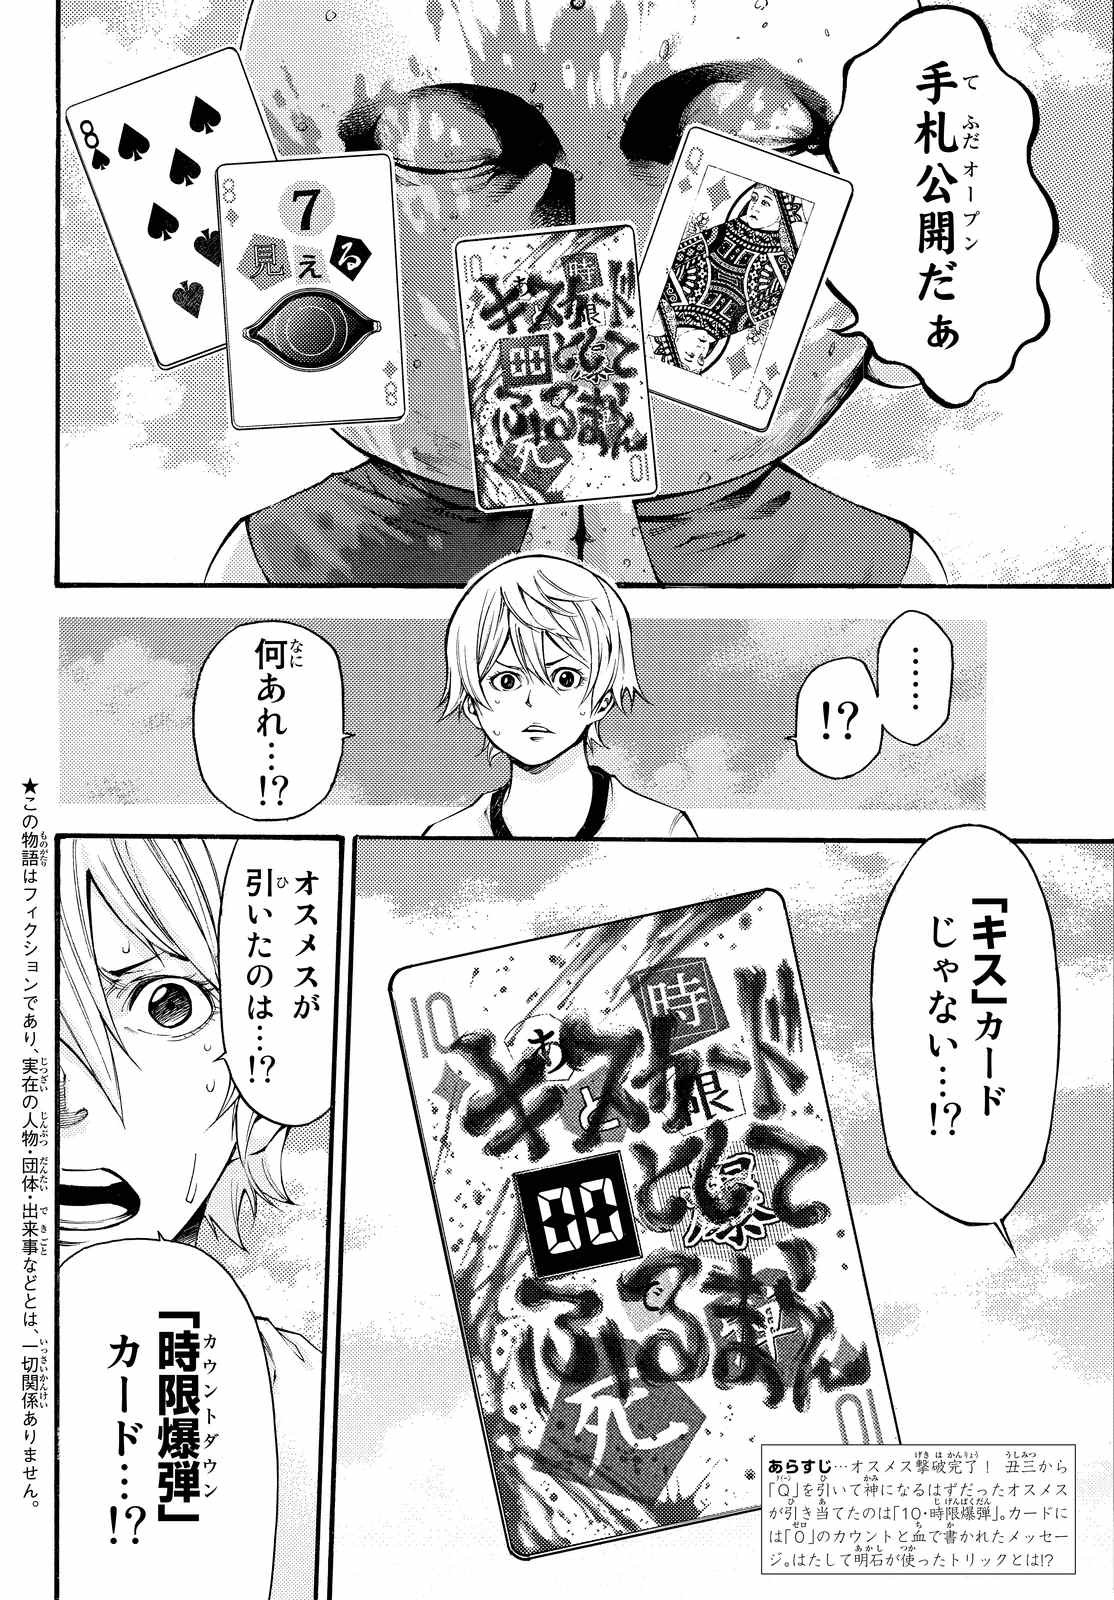 Kamisama_no_Ituori - Chapter 165 - Page 2